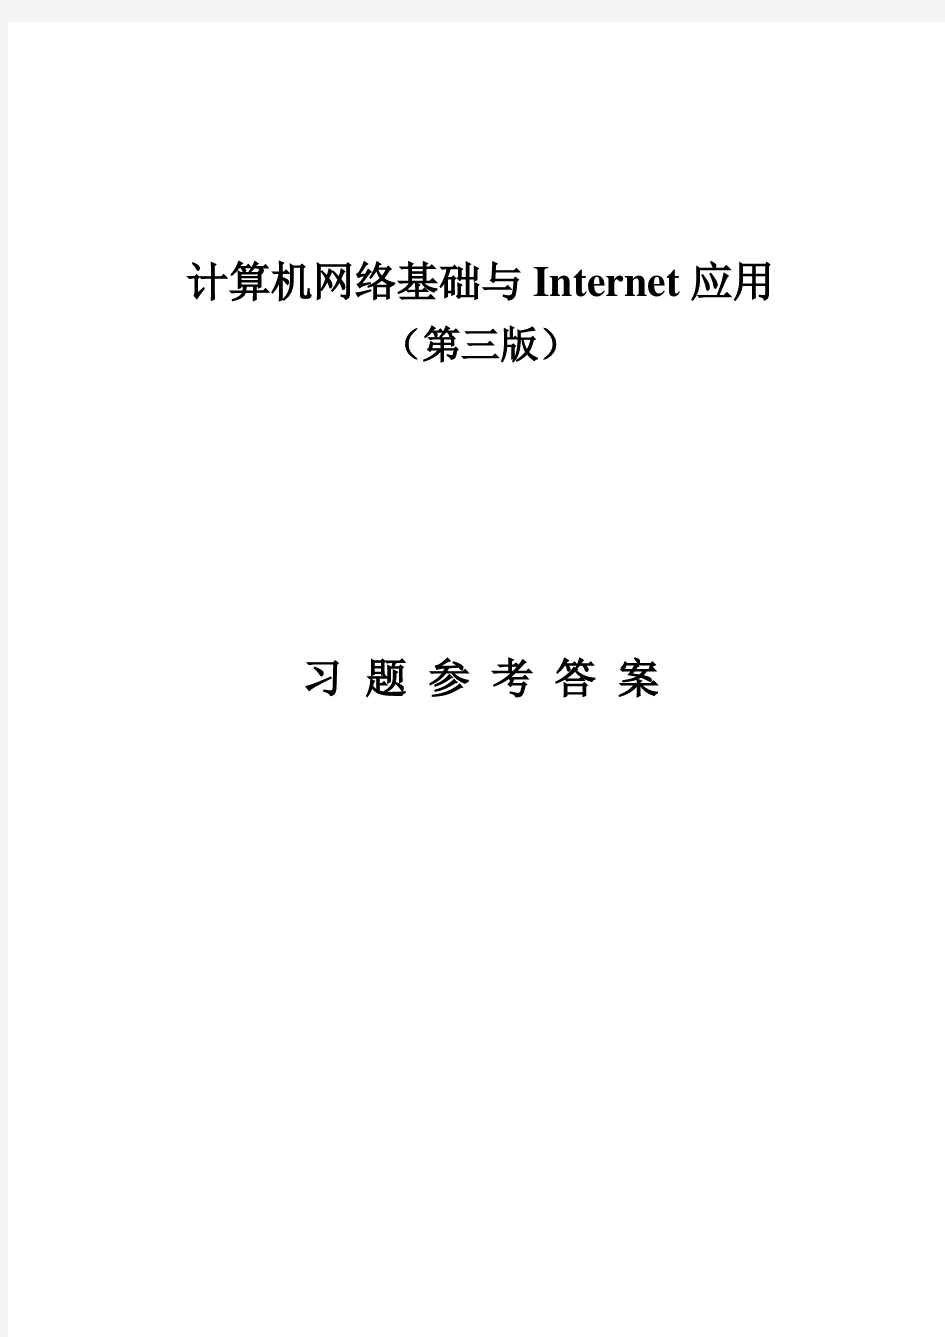 刘兵《计算机网络基础与Internet应用(第三版)》参考答案